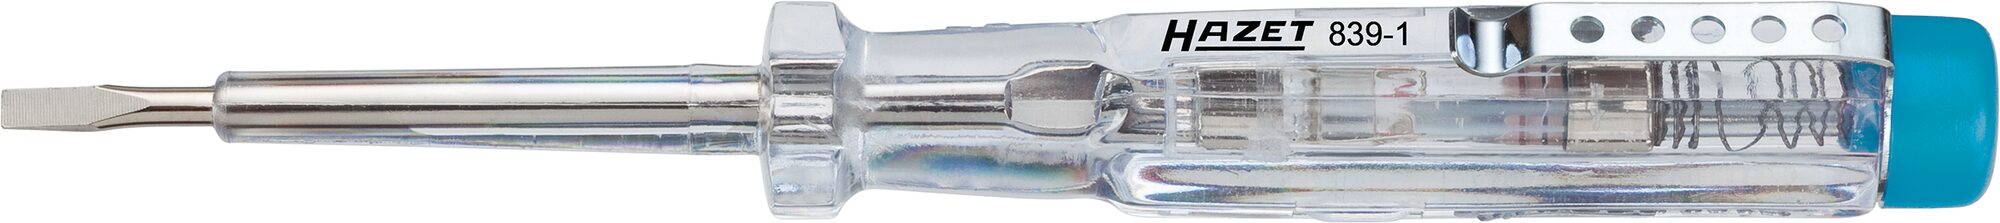 HAZET Spannungsprüfer 839-1 · Schlitz Profil · 0.5 x 2.8 mm